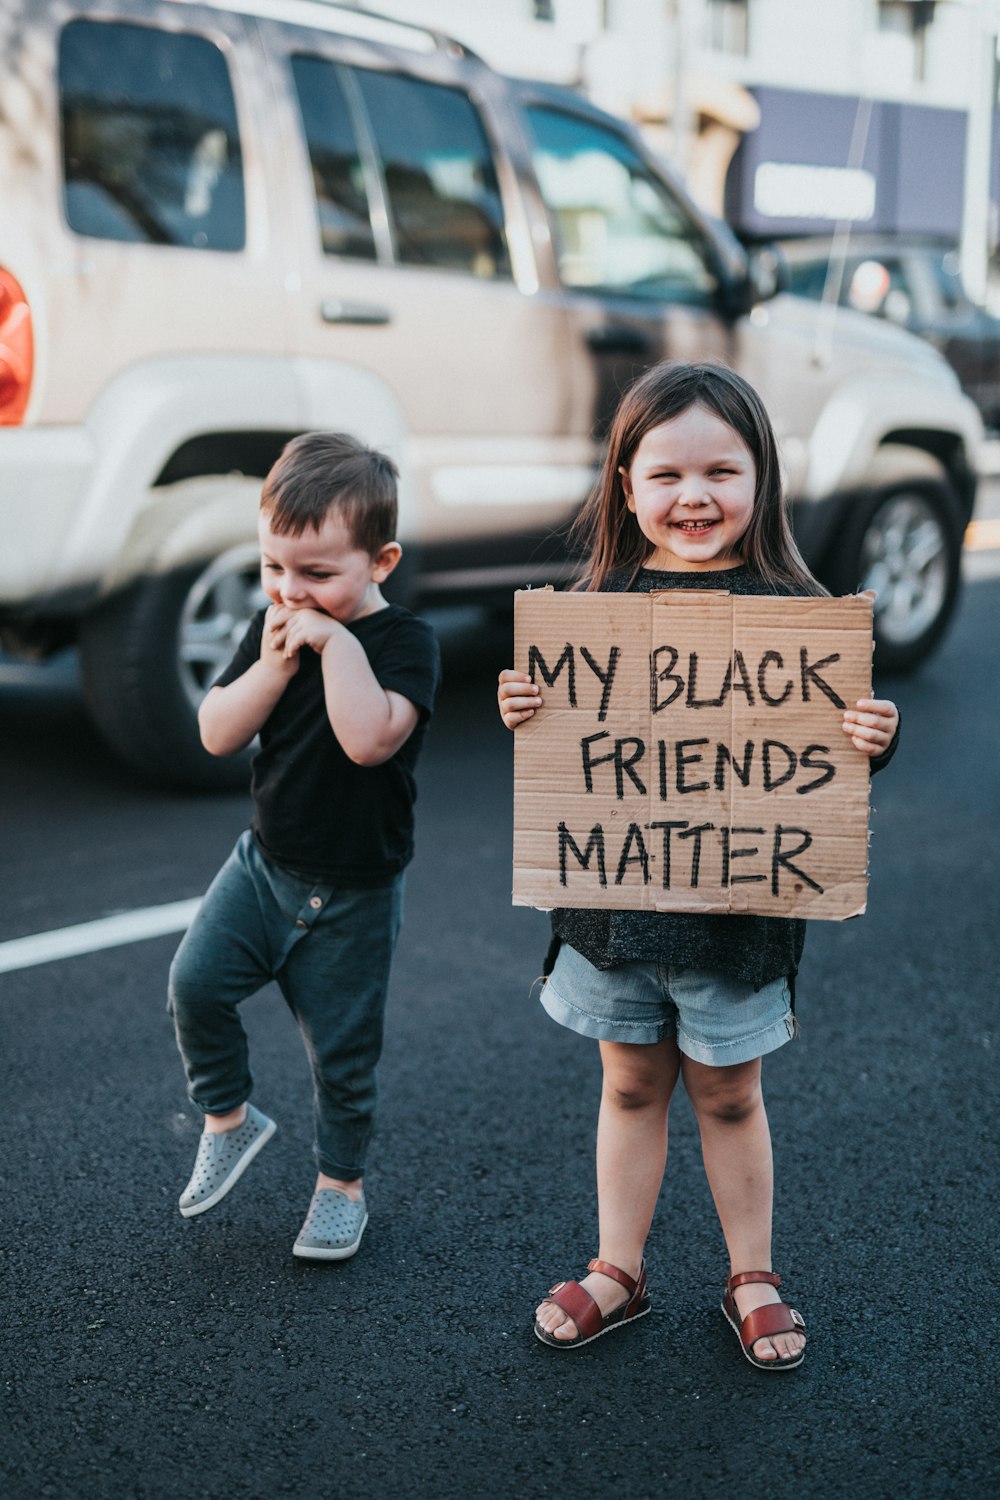 私の黒人の友達が重要であるという看板を持っている2人の子供